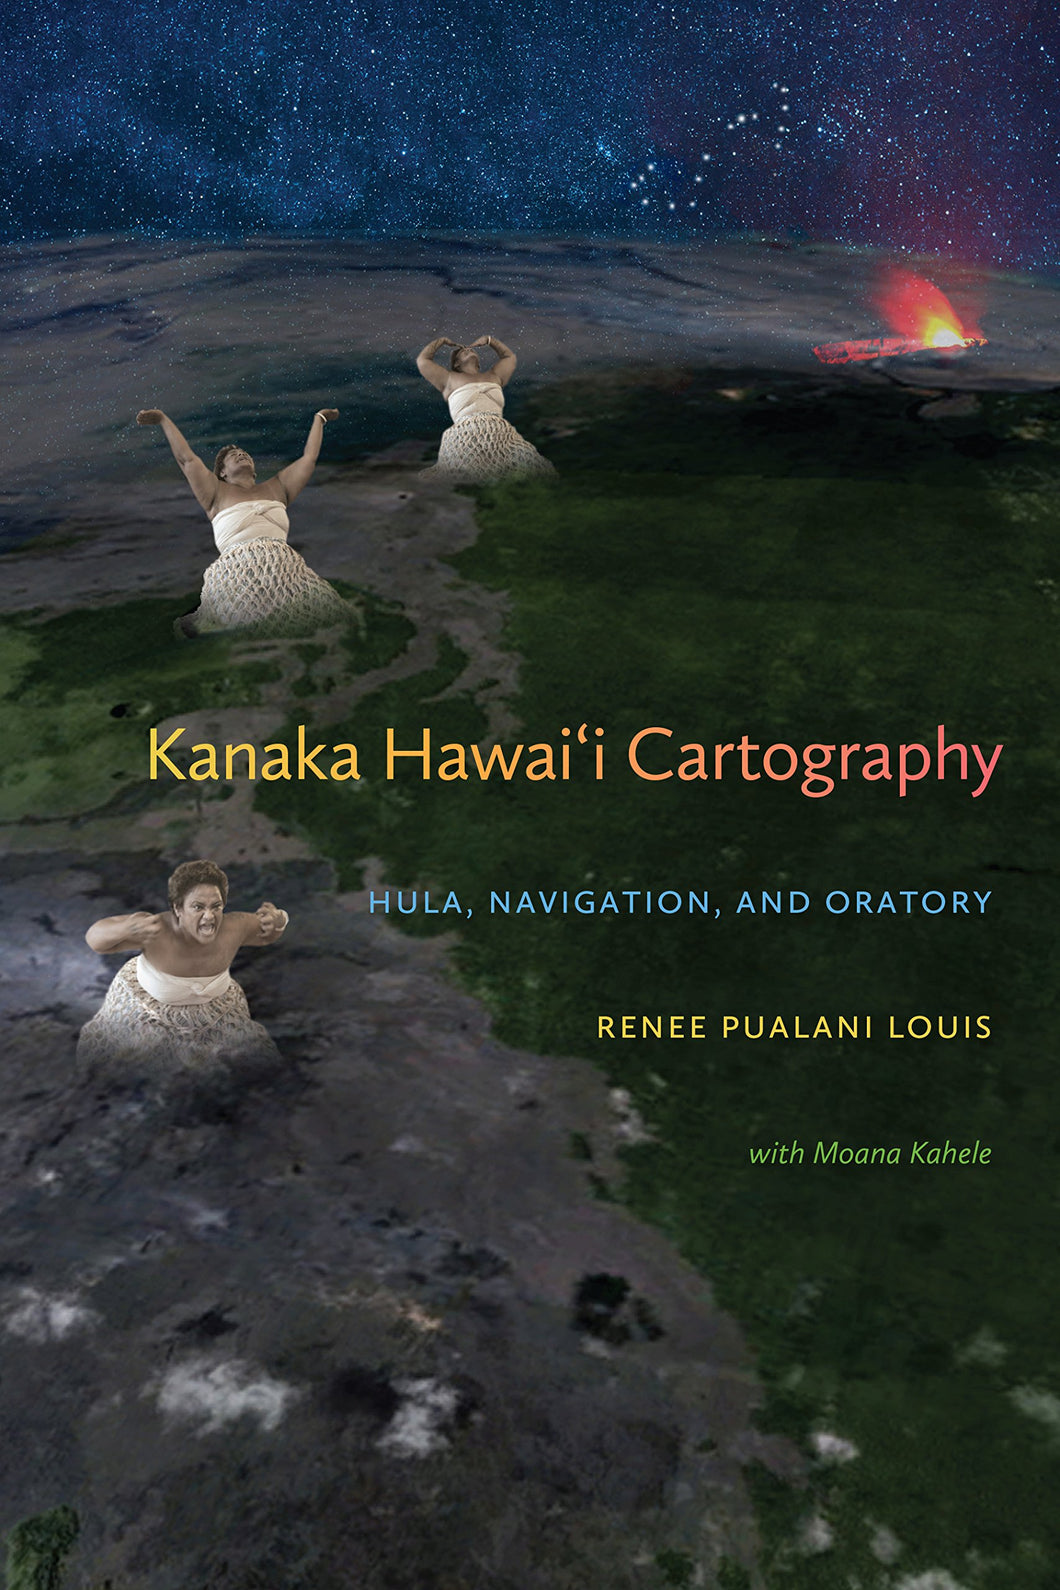 Kanaka Hawai'i Cartography: Hula, Navigation, and Oratory by Renee Pualani Louis with Moana Kahele